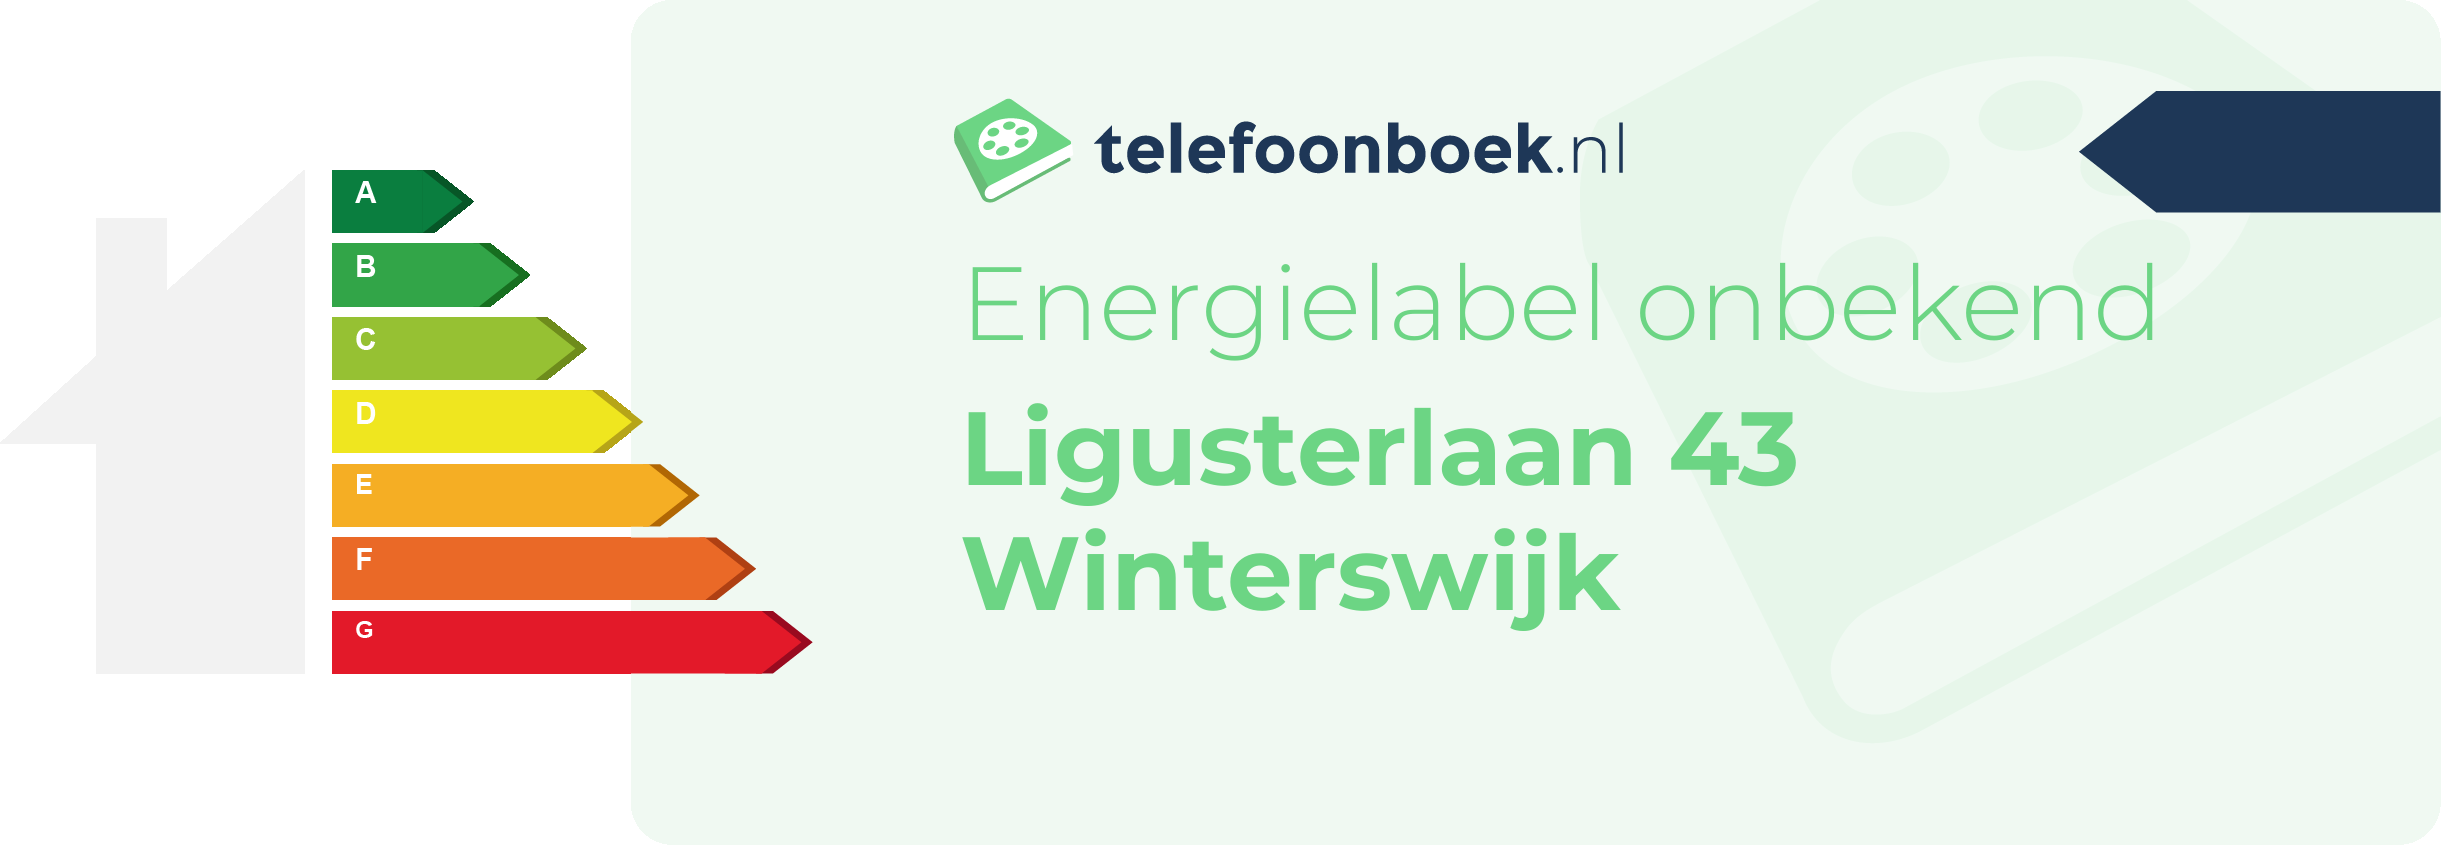 Energielabel Ligusterlaan 43 Winterswijk